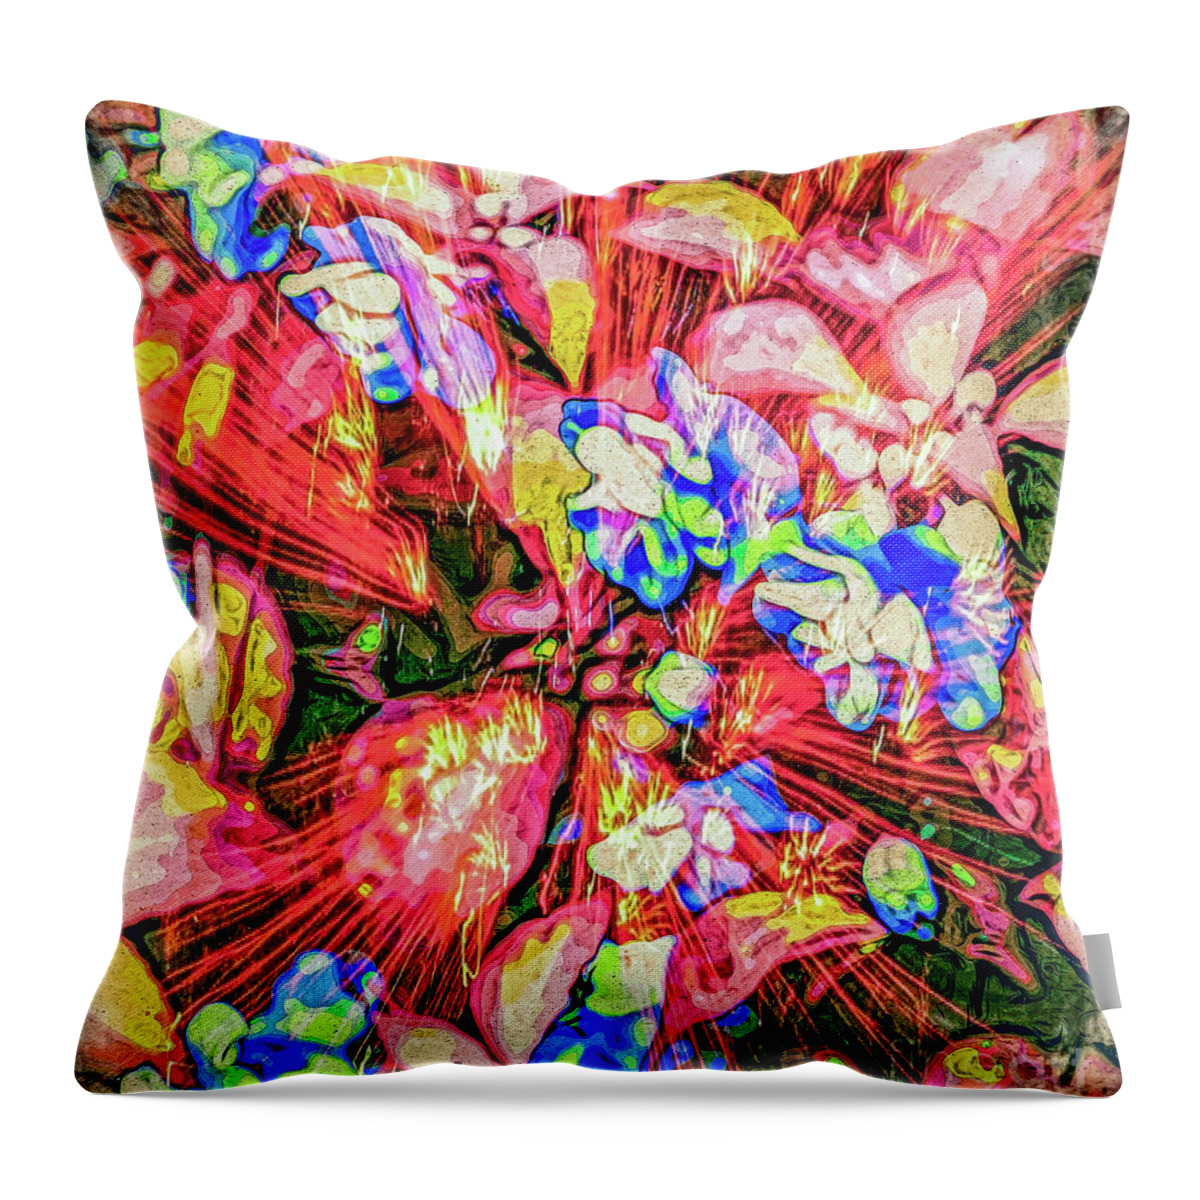 Abstract Throw Pillow featuring the digital art Pot Pourri by Eleni Synodinou